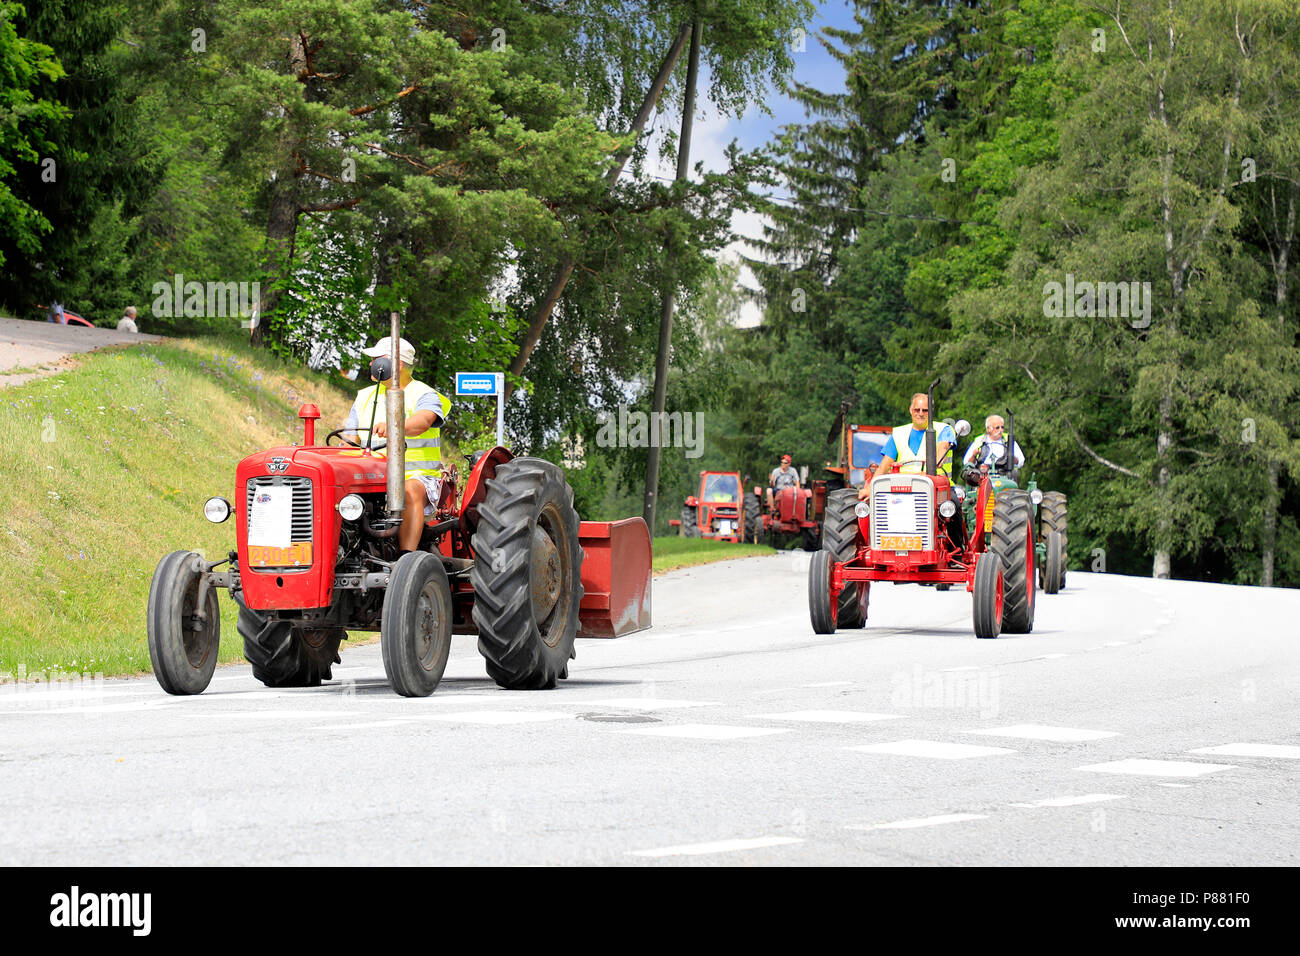 Vintage tractors drive in procession through Kimito community on Kimito Tractorkavalkad, Tractor Cavalcade. Kimito, Finland - July 7, 2018. Stock Photo